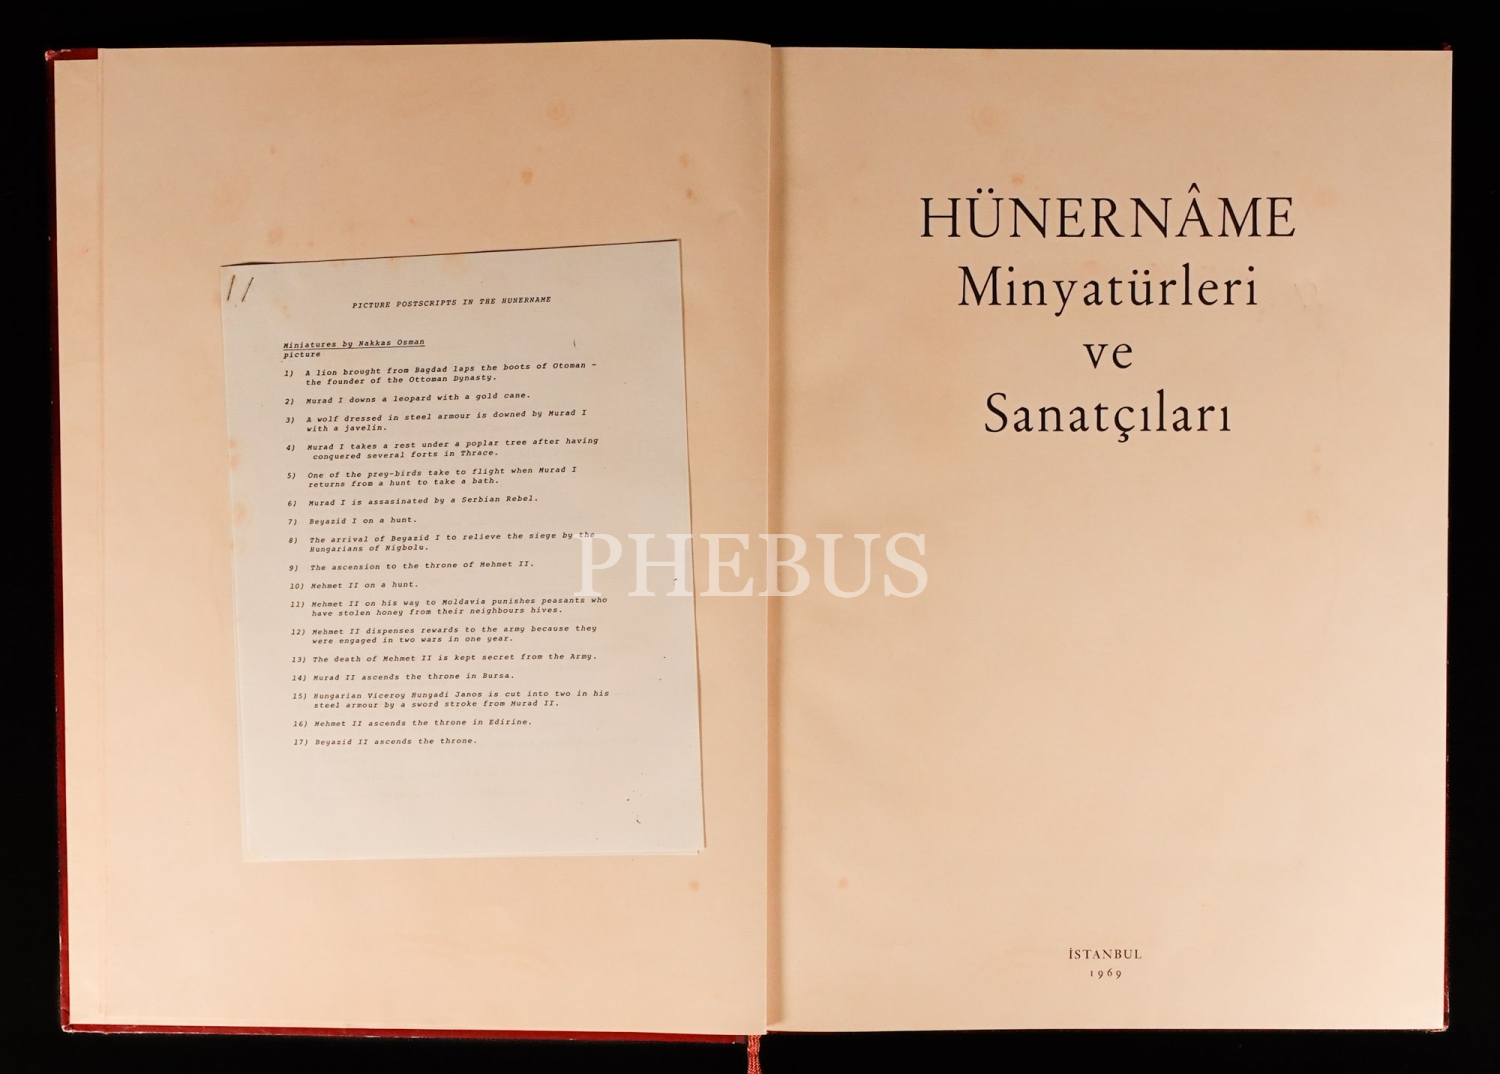 HÜNERNÂME MİNYATÜRLERİ VE SANATÇILARI, 1969, Yapı ve Kredi Bankası, 43 sayfa, 34x47 cm...